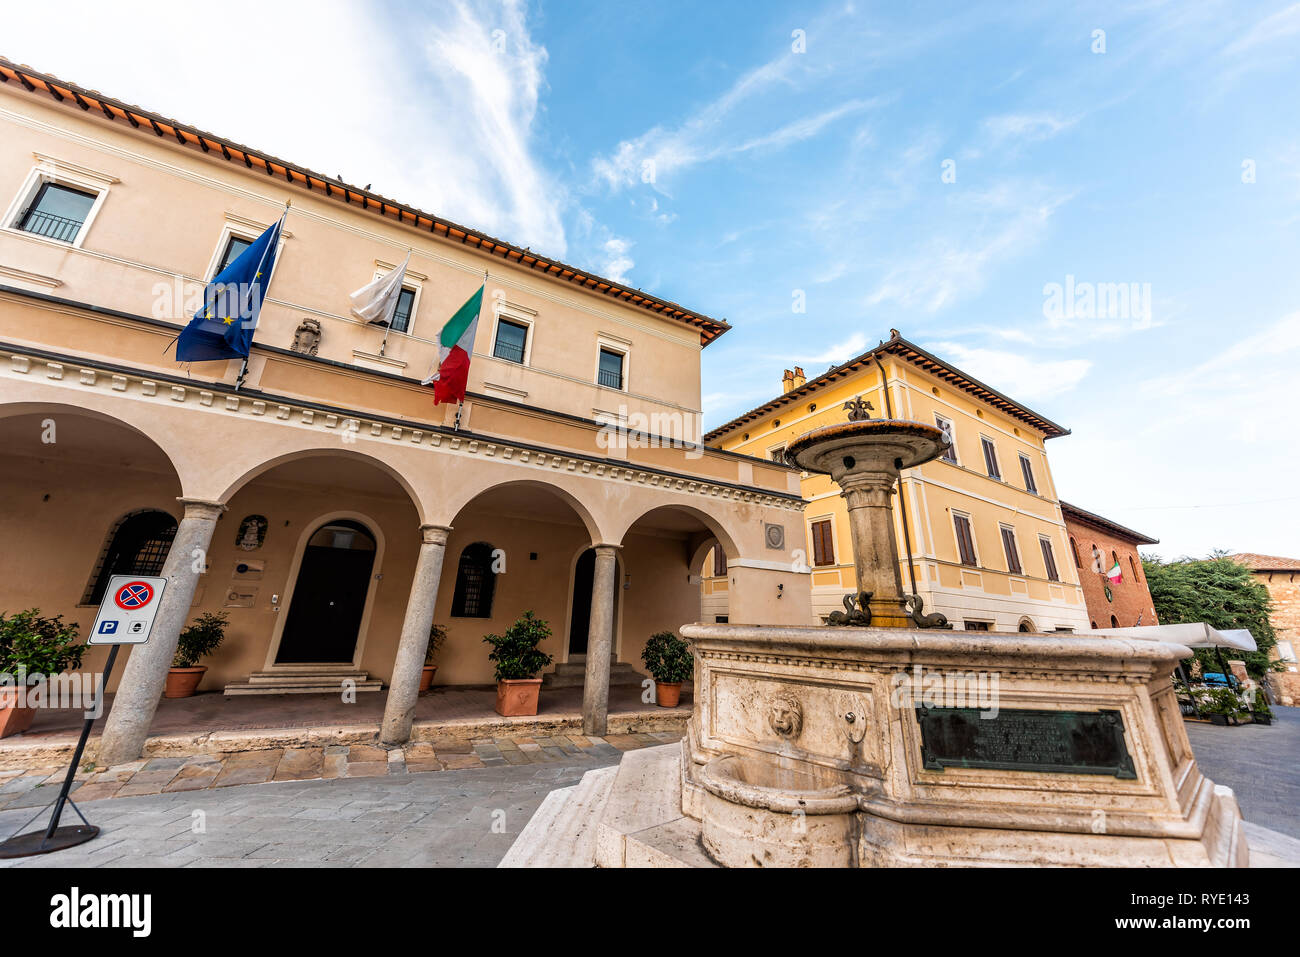 Chiusi, Italien - 25 August 2018: leere Straße in kleinen Stadt Dorf in der Toskana bei Tag mit Rathaus Flaggen im Zentrum und historischen Brunnen Stockfoto